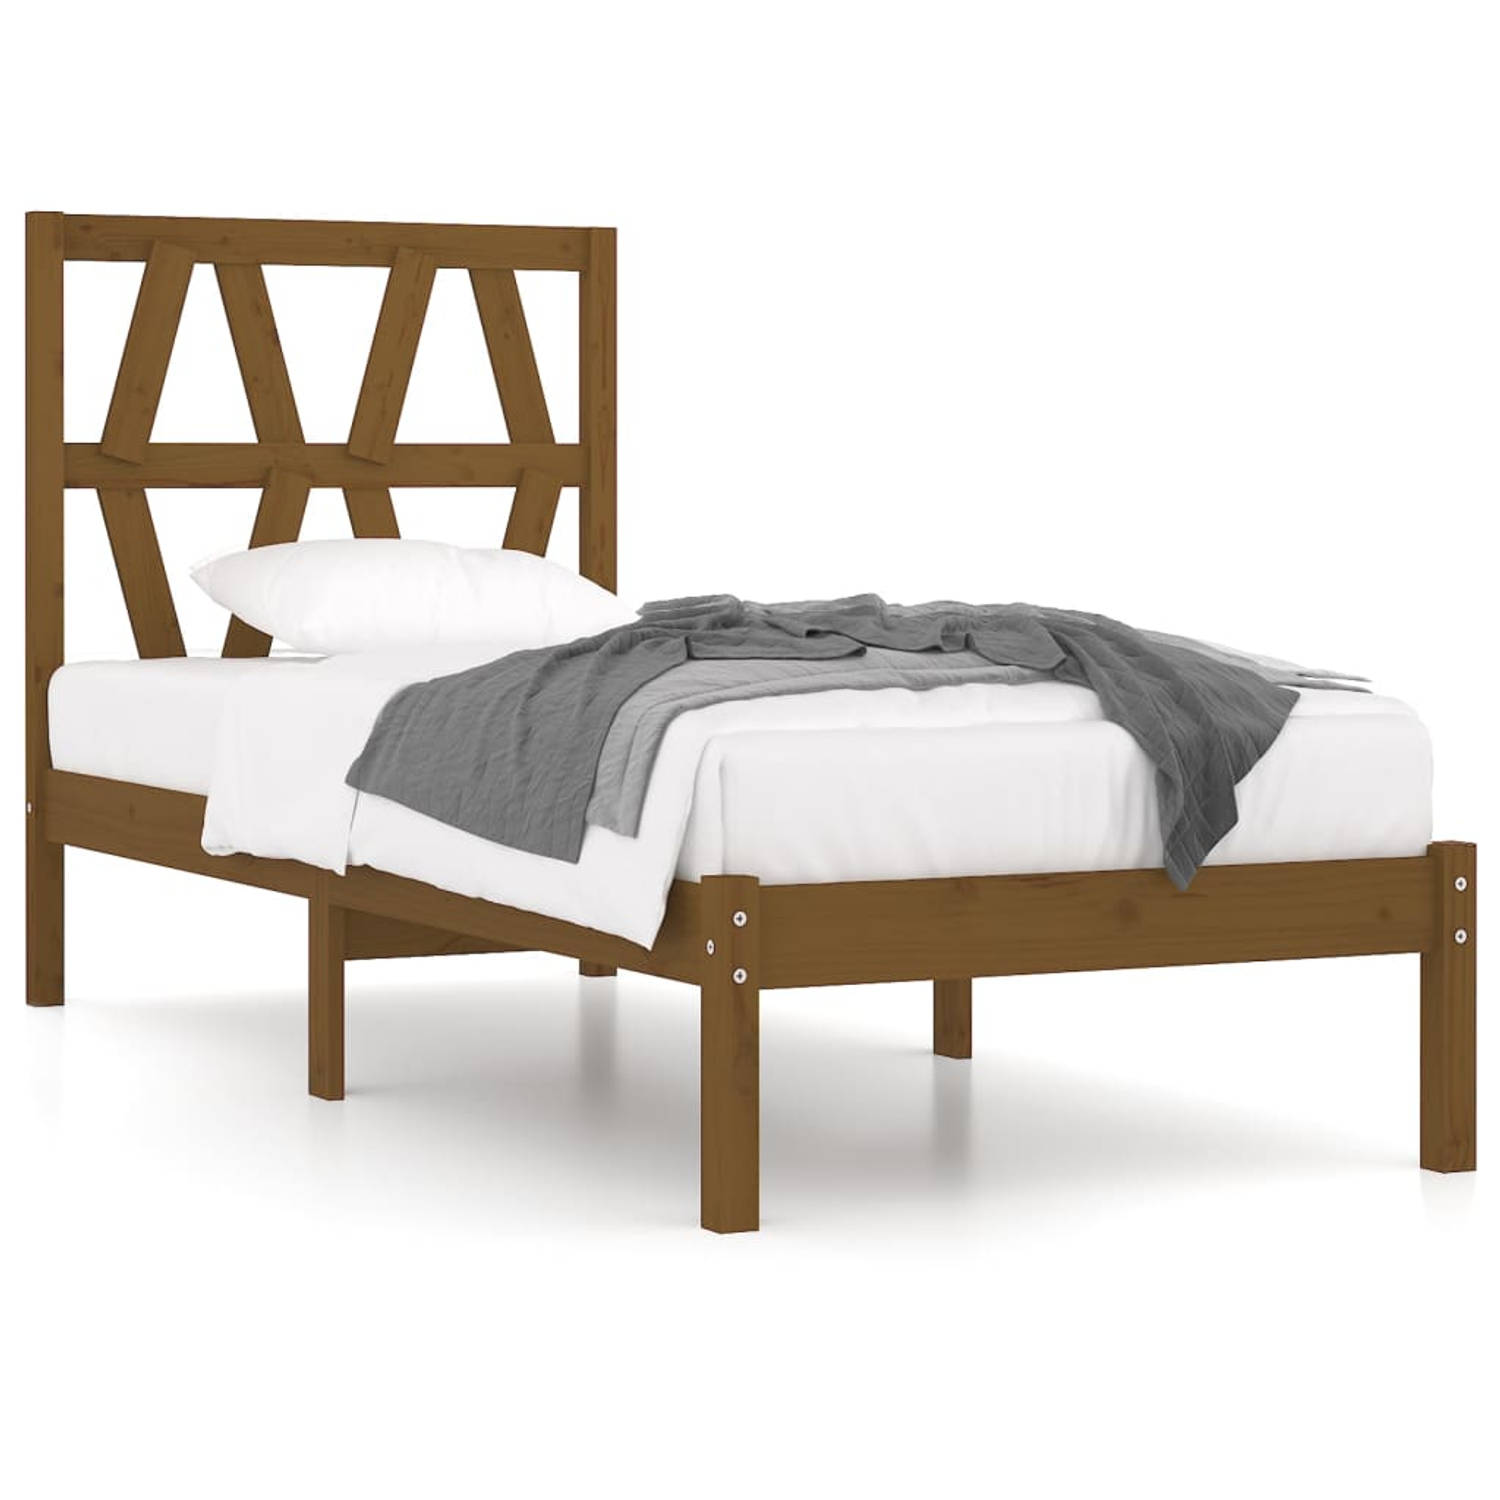 The Living Store Bedframe grenenhout honingbruin 75x190 cm 2FT6 Small Single - Bedframe - Bedframes - Eenpersoonsbed - Bed - Bedombouw - Enkel Bed - Frame - Bed Frame - Ledikant -